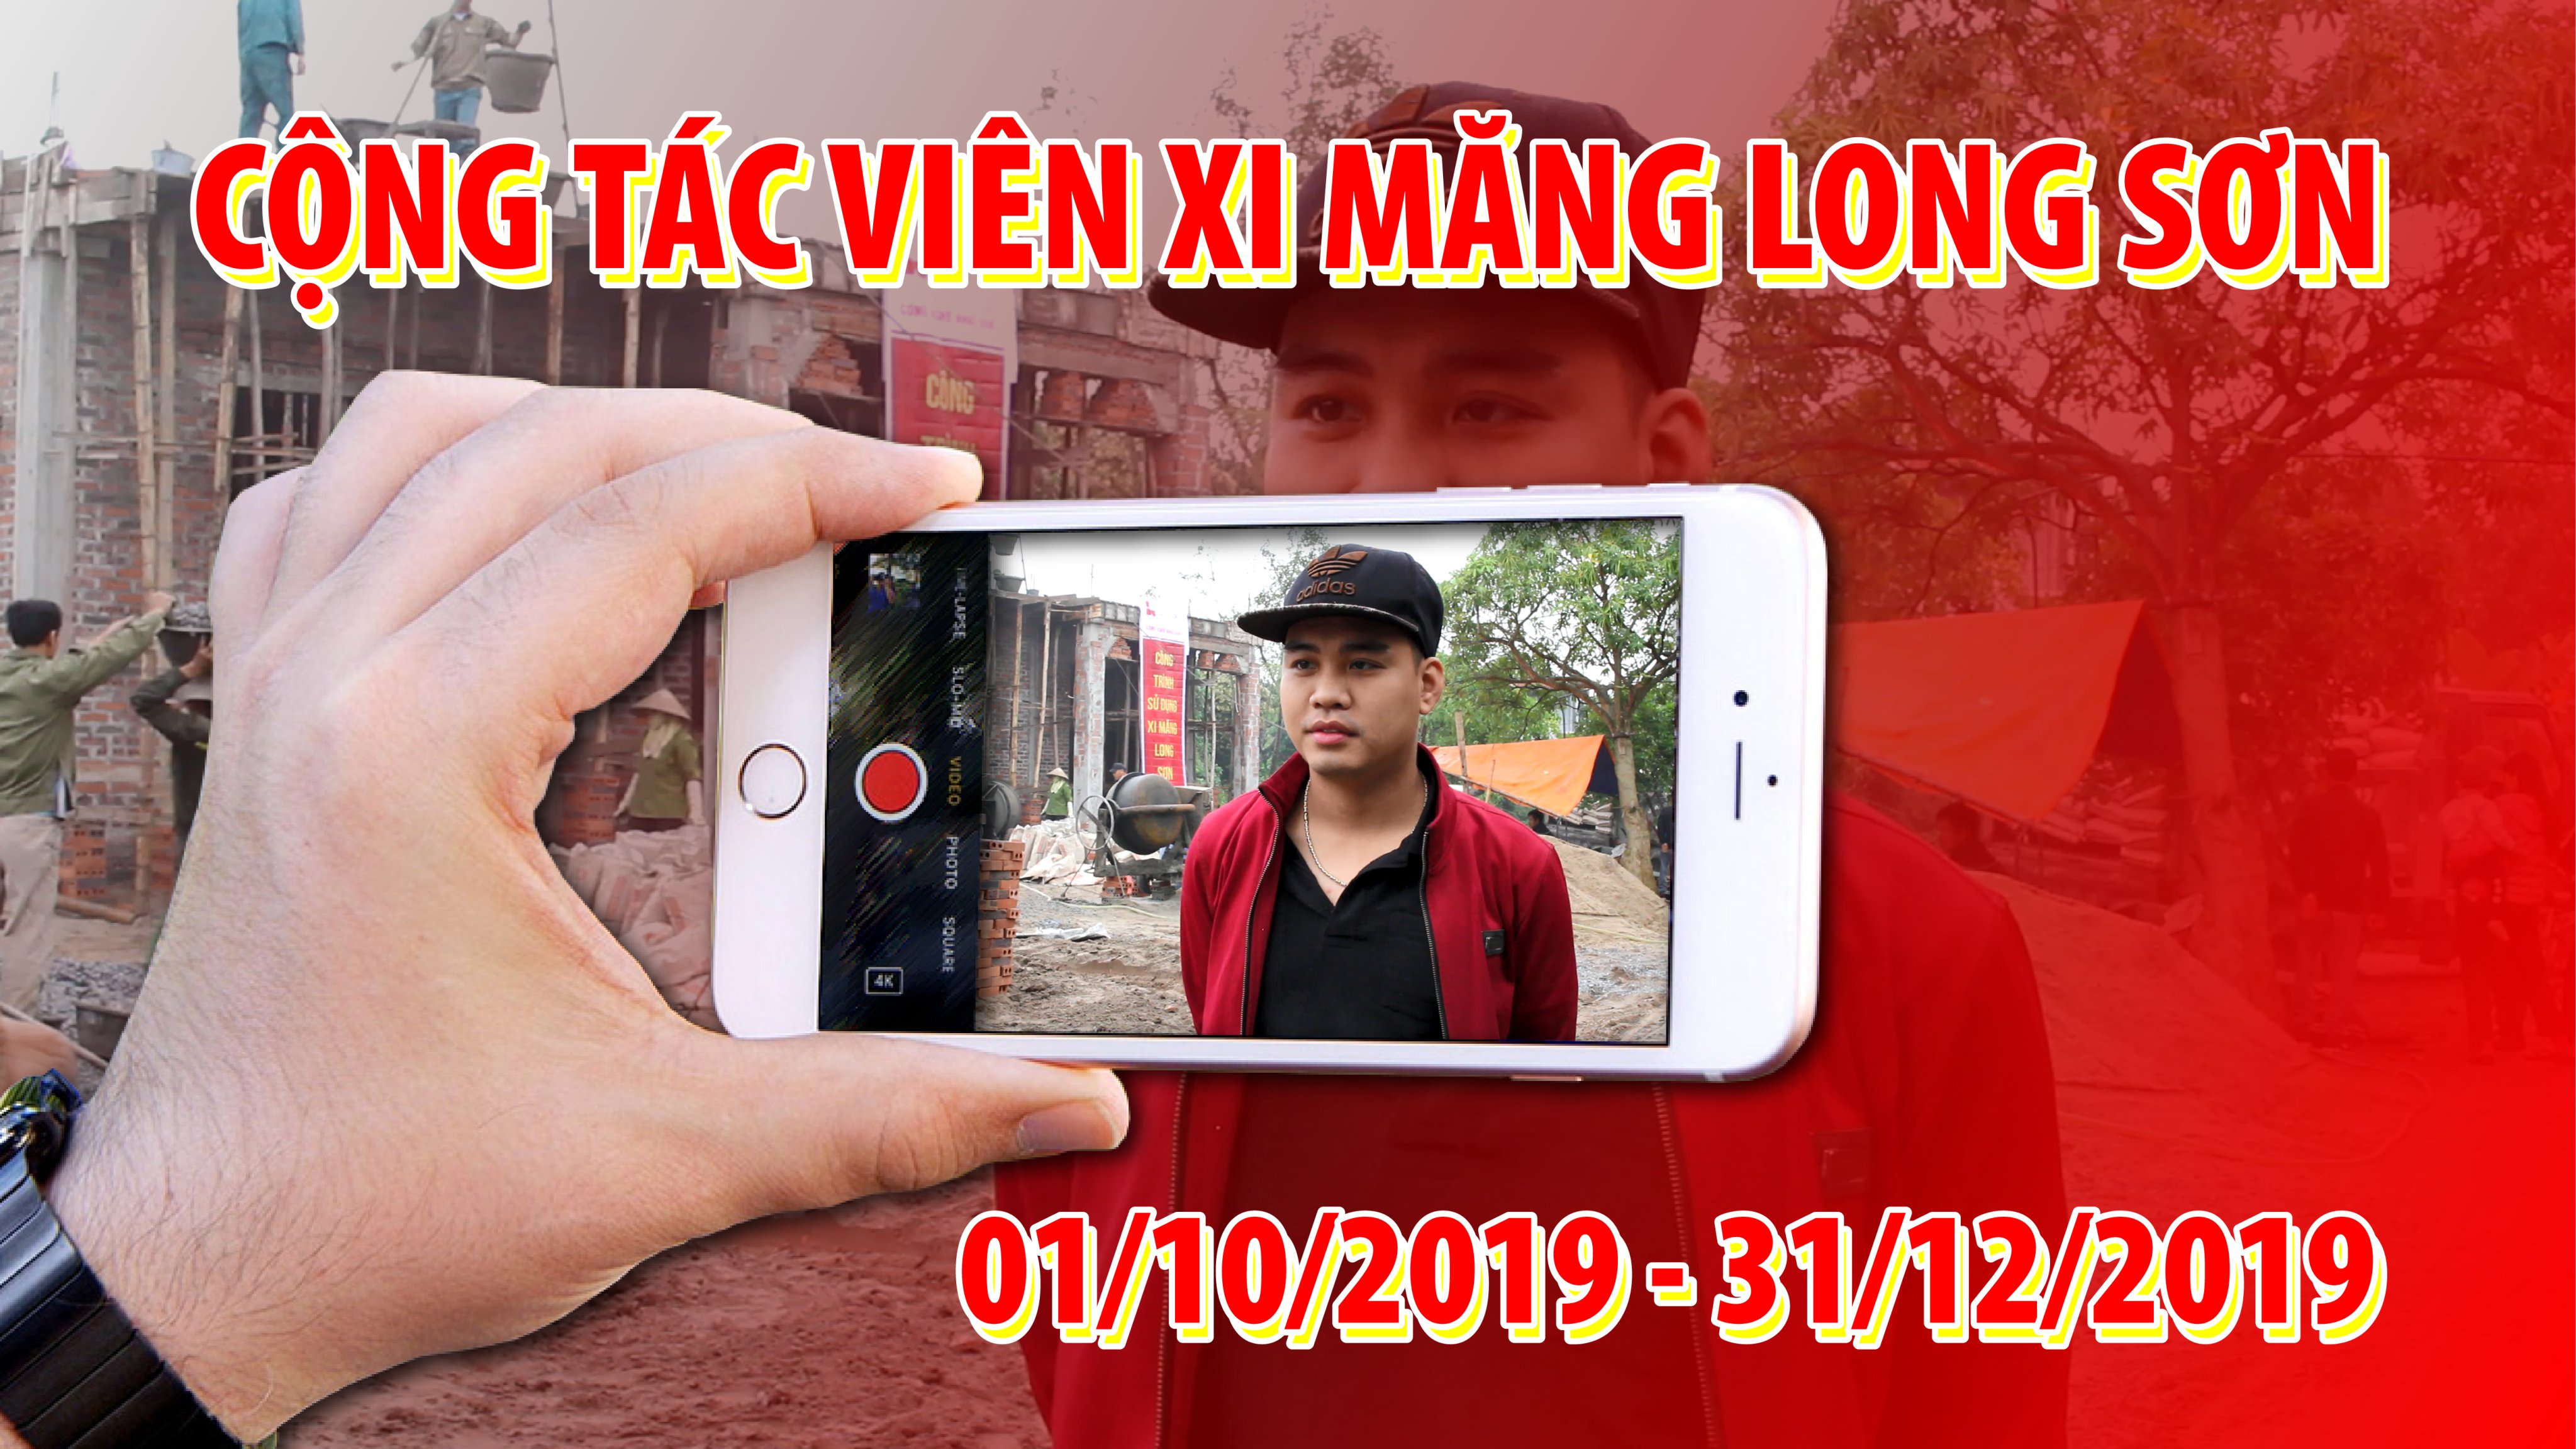 Xi Măng Long Sơn tìm kiếm cộng tác viên làm video phóng sự